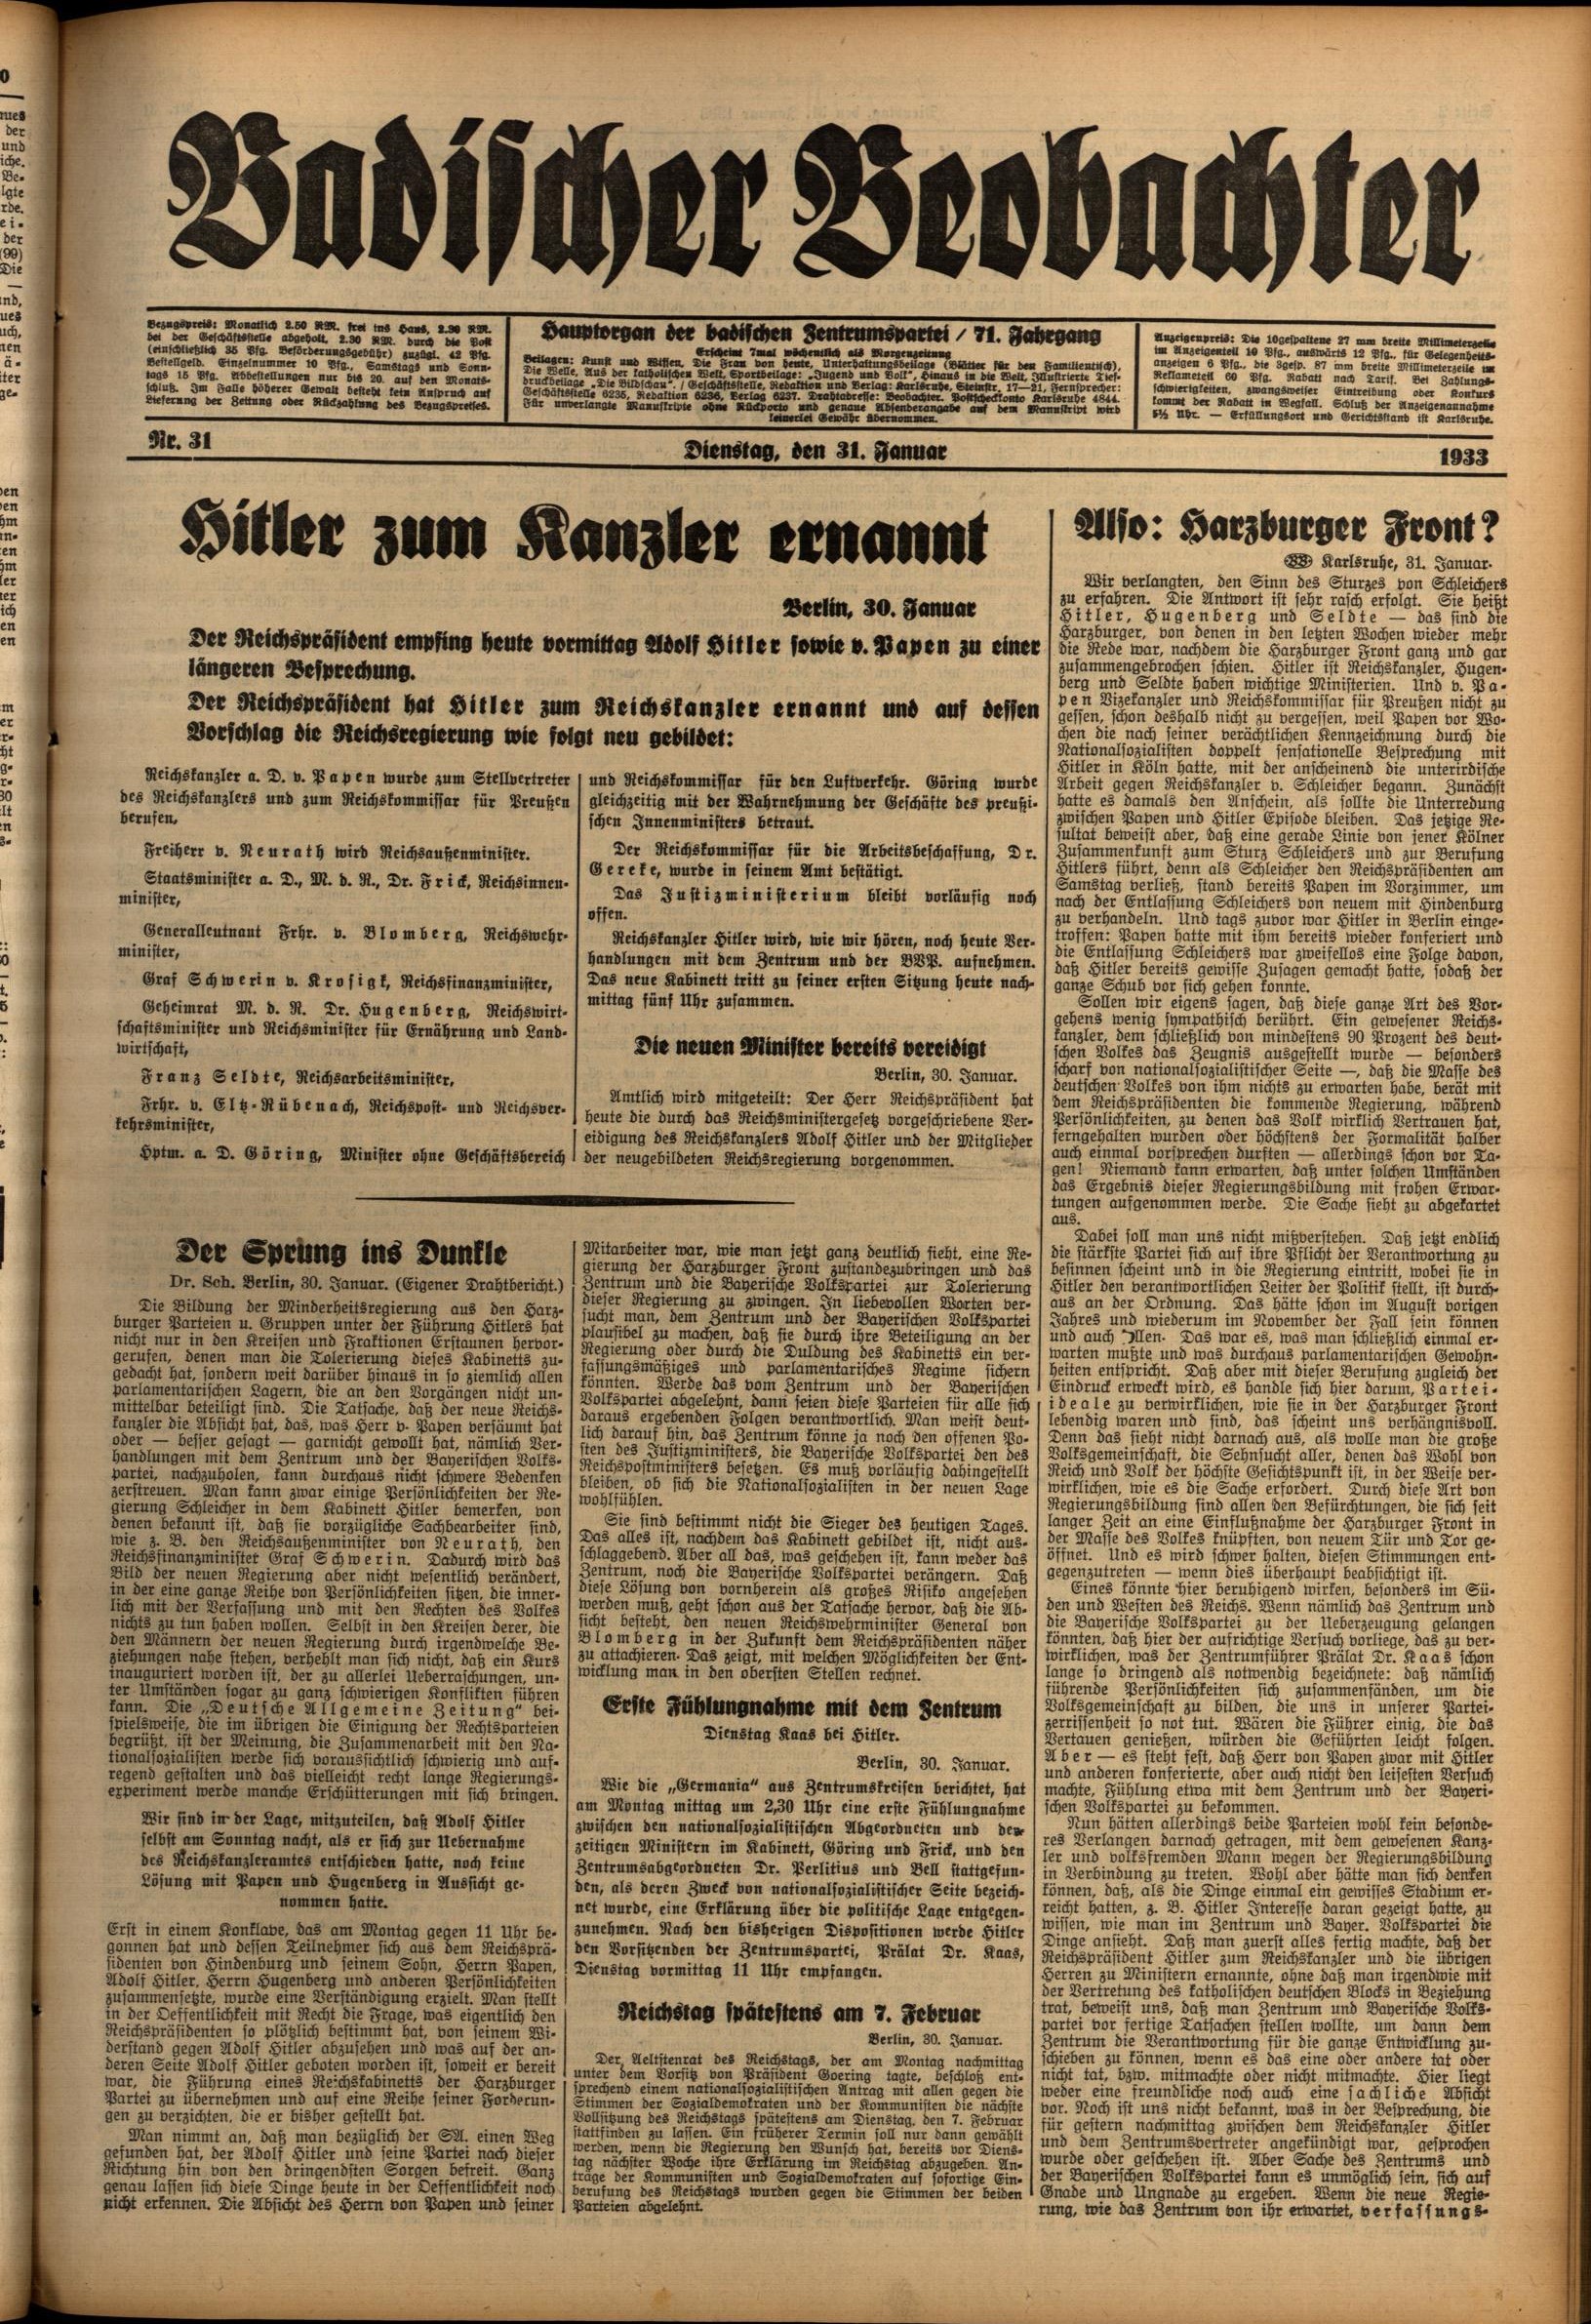 Zu sehen ist das Titelblatt des Badischen Beobachters vom 31. Januar 1933. 